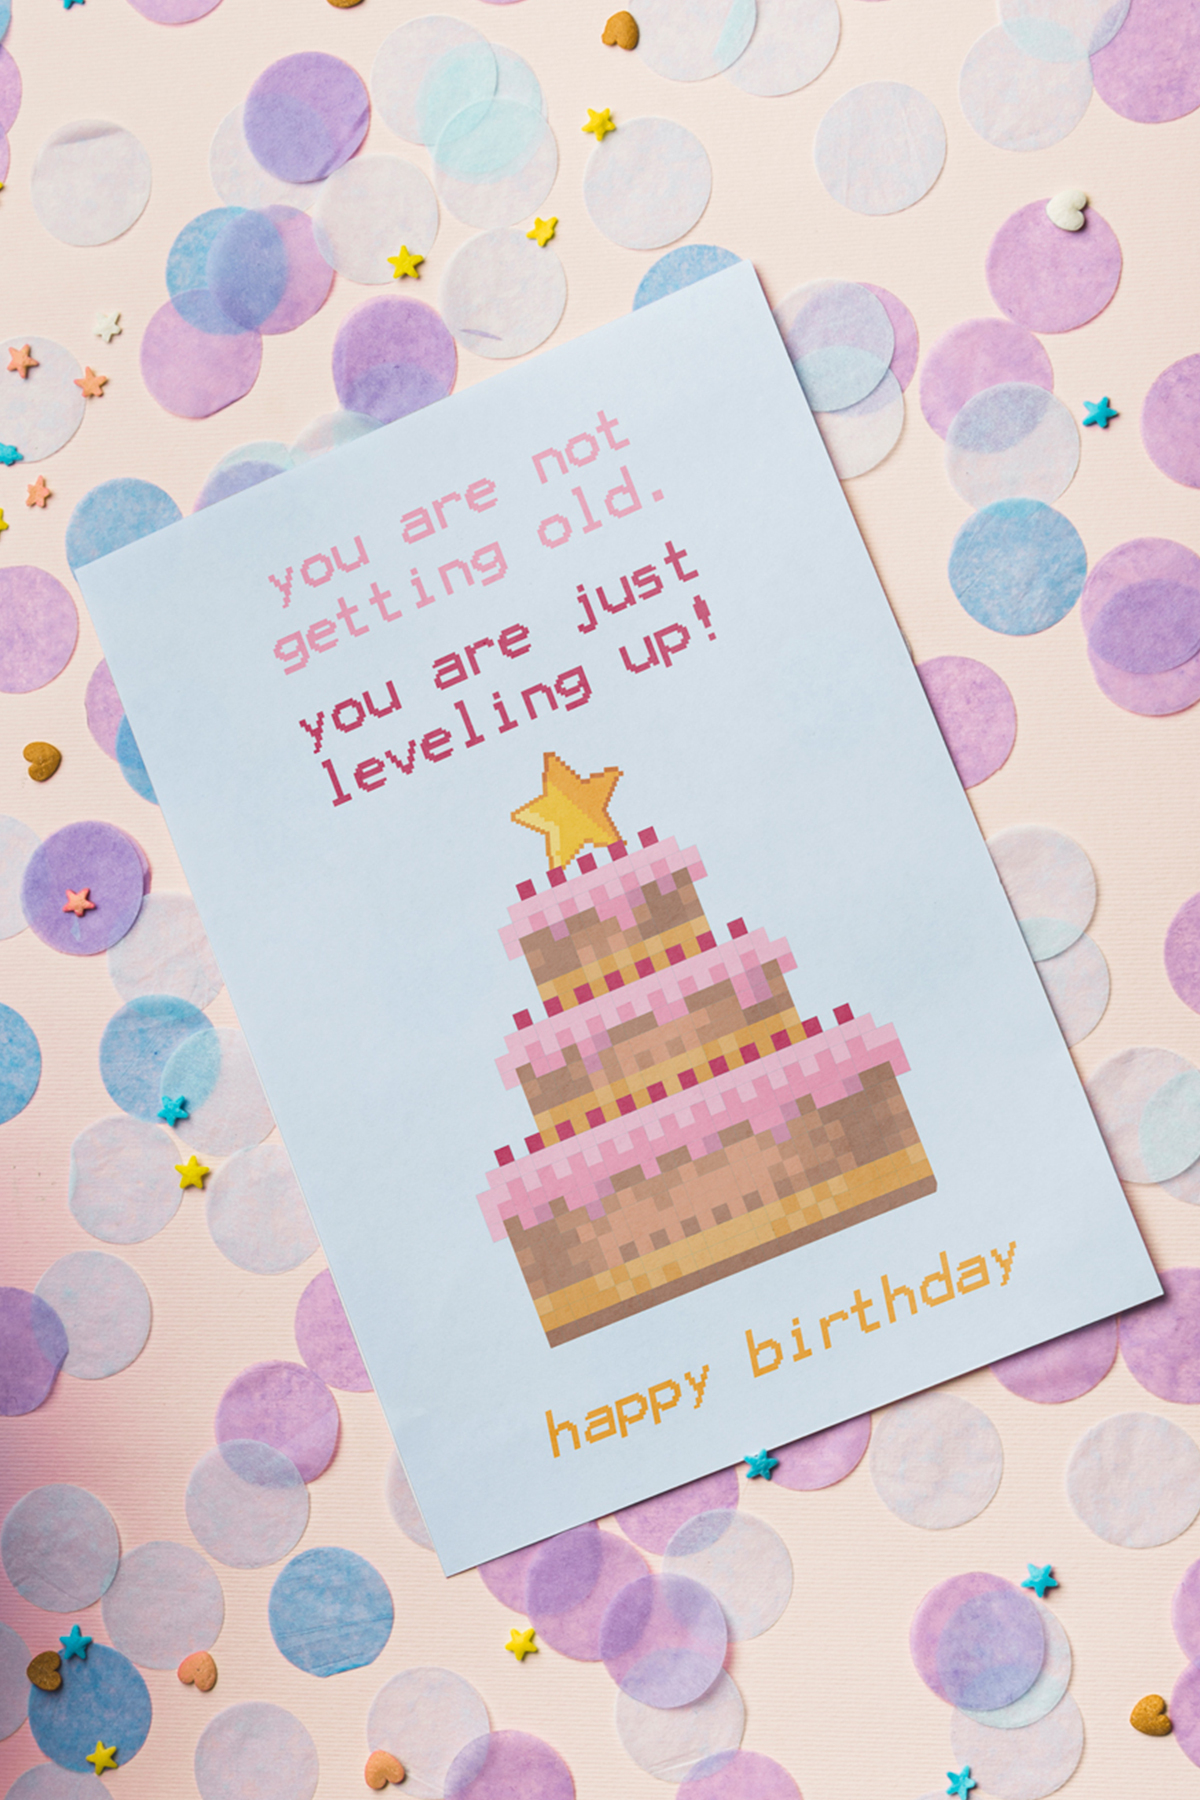 10 Coole Geburtstagskarten Zum Ausdrucken | Free Printable verwandt mit Geburtstagskarte Ausdrucken Online